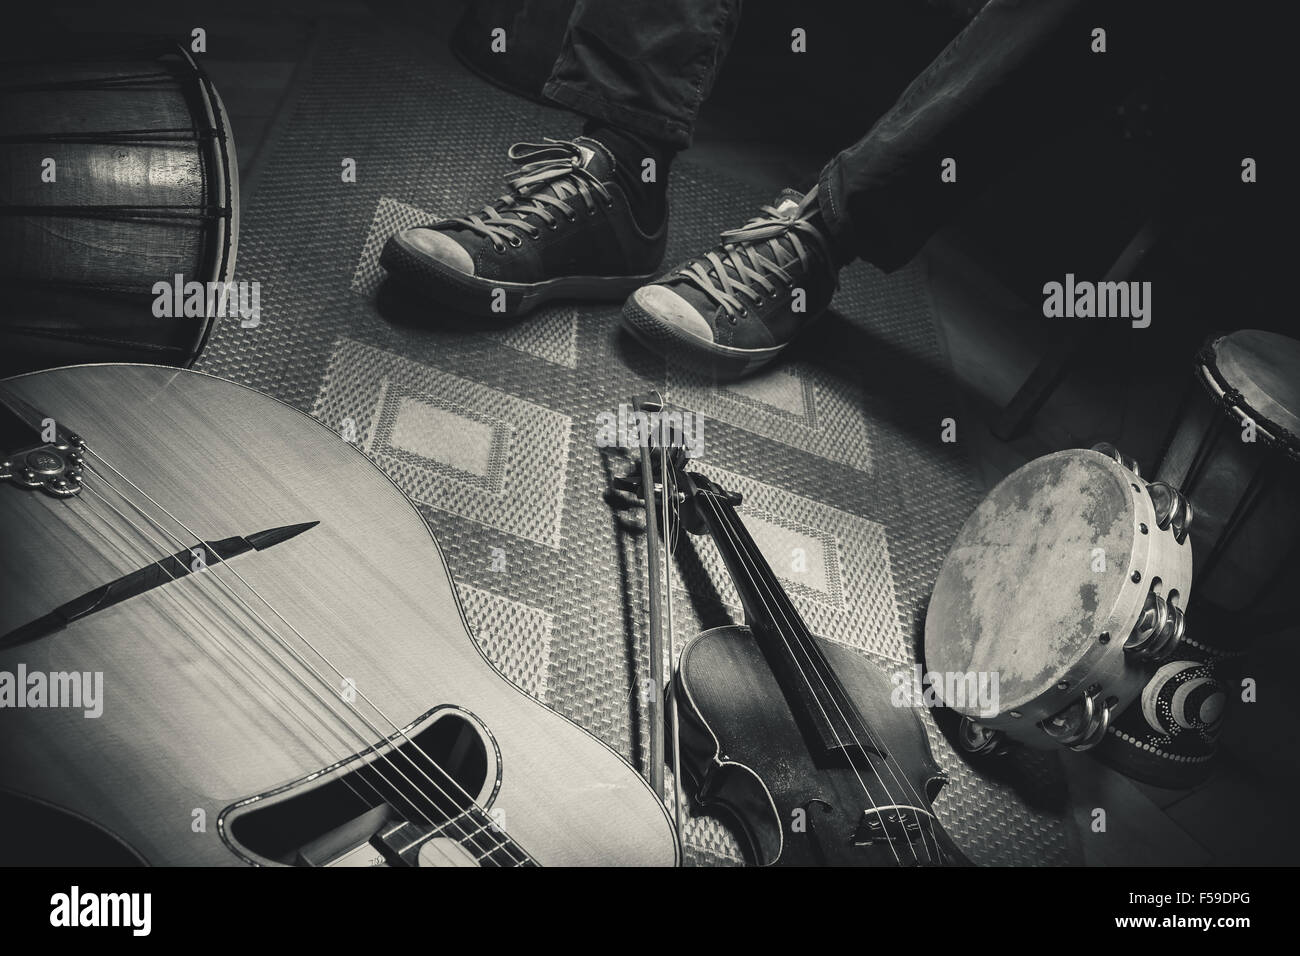 Les jambes d'un musicien et d'instruments acoustiques sur marbre, violon, guitare et percussions, en noir et blanc comme style rétro. Banque D'Images